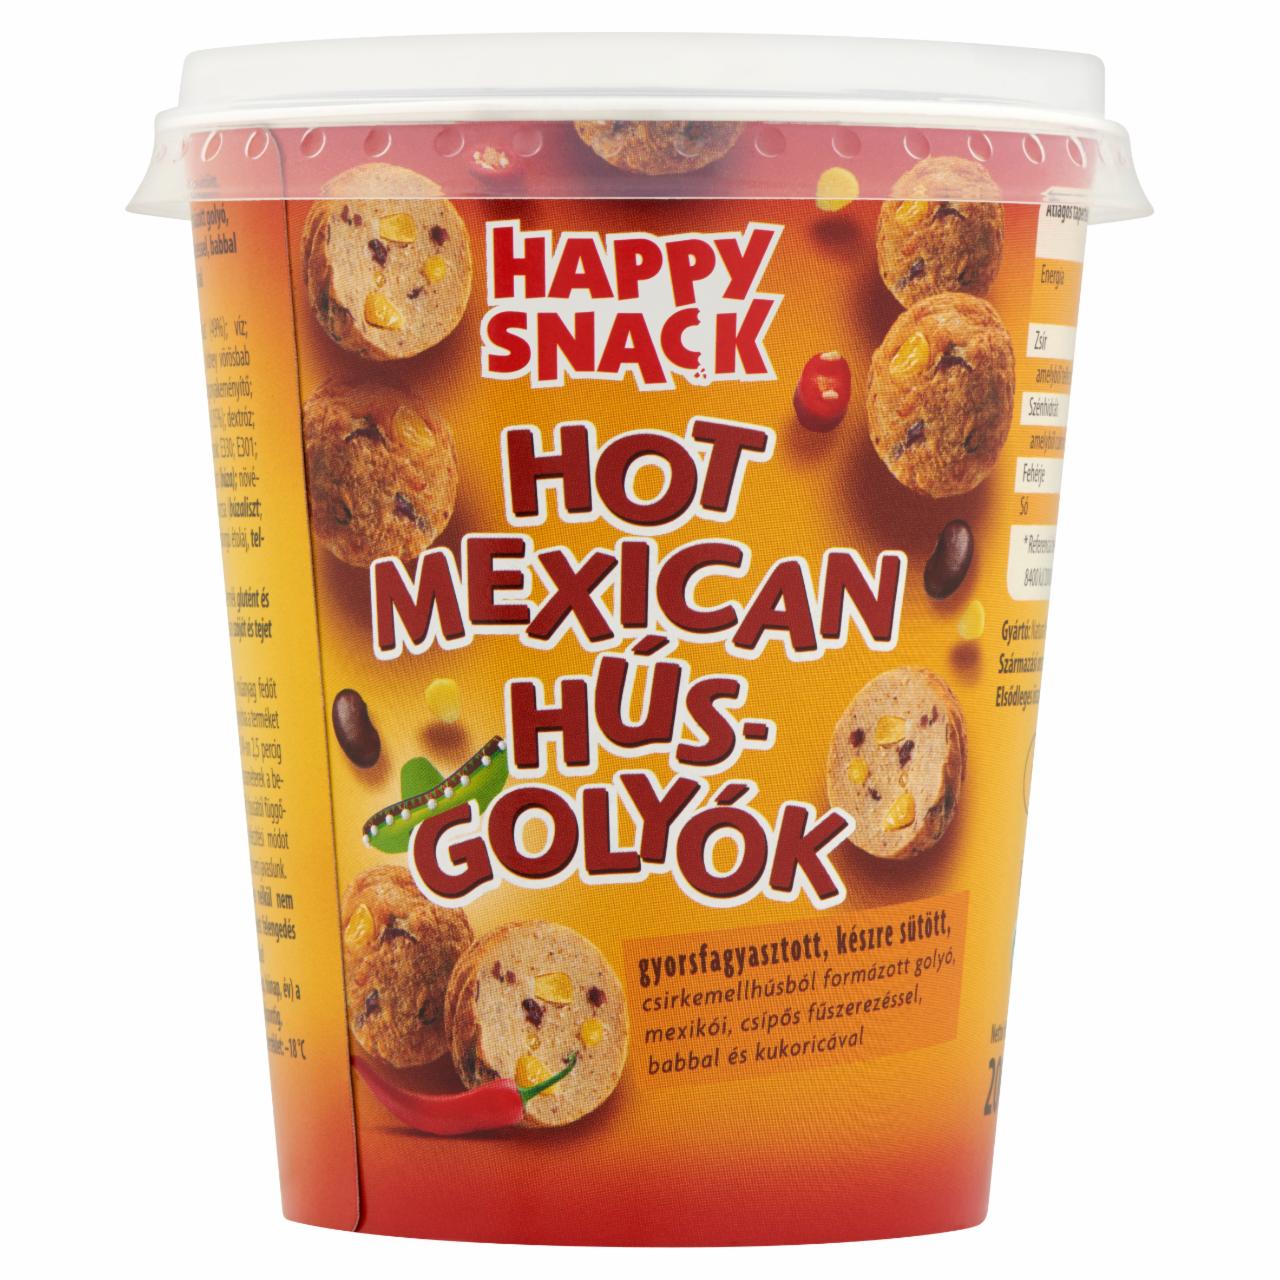 Képek - Happy Snack Hot Mexican gyorsfagyasztott, készre sütött húsgolyók 200 g